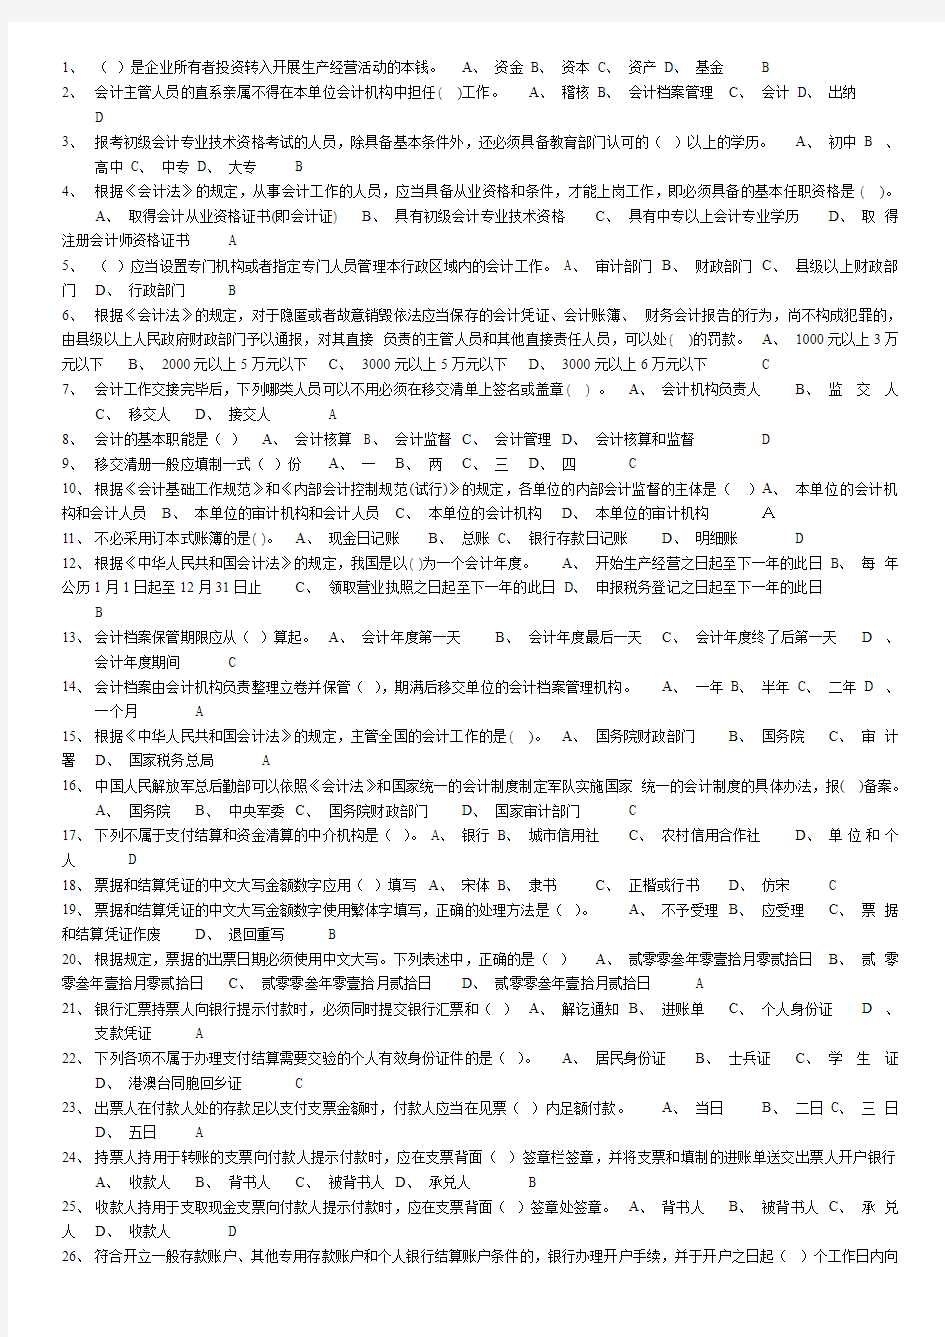 哈尔滨会计上岗证题库财经法规.doc6